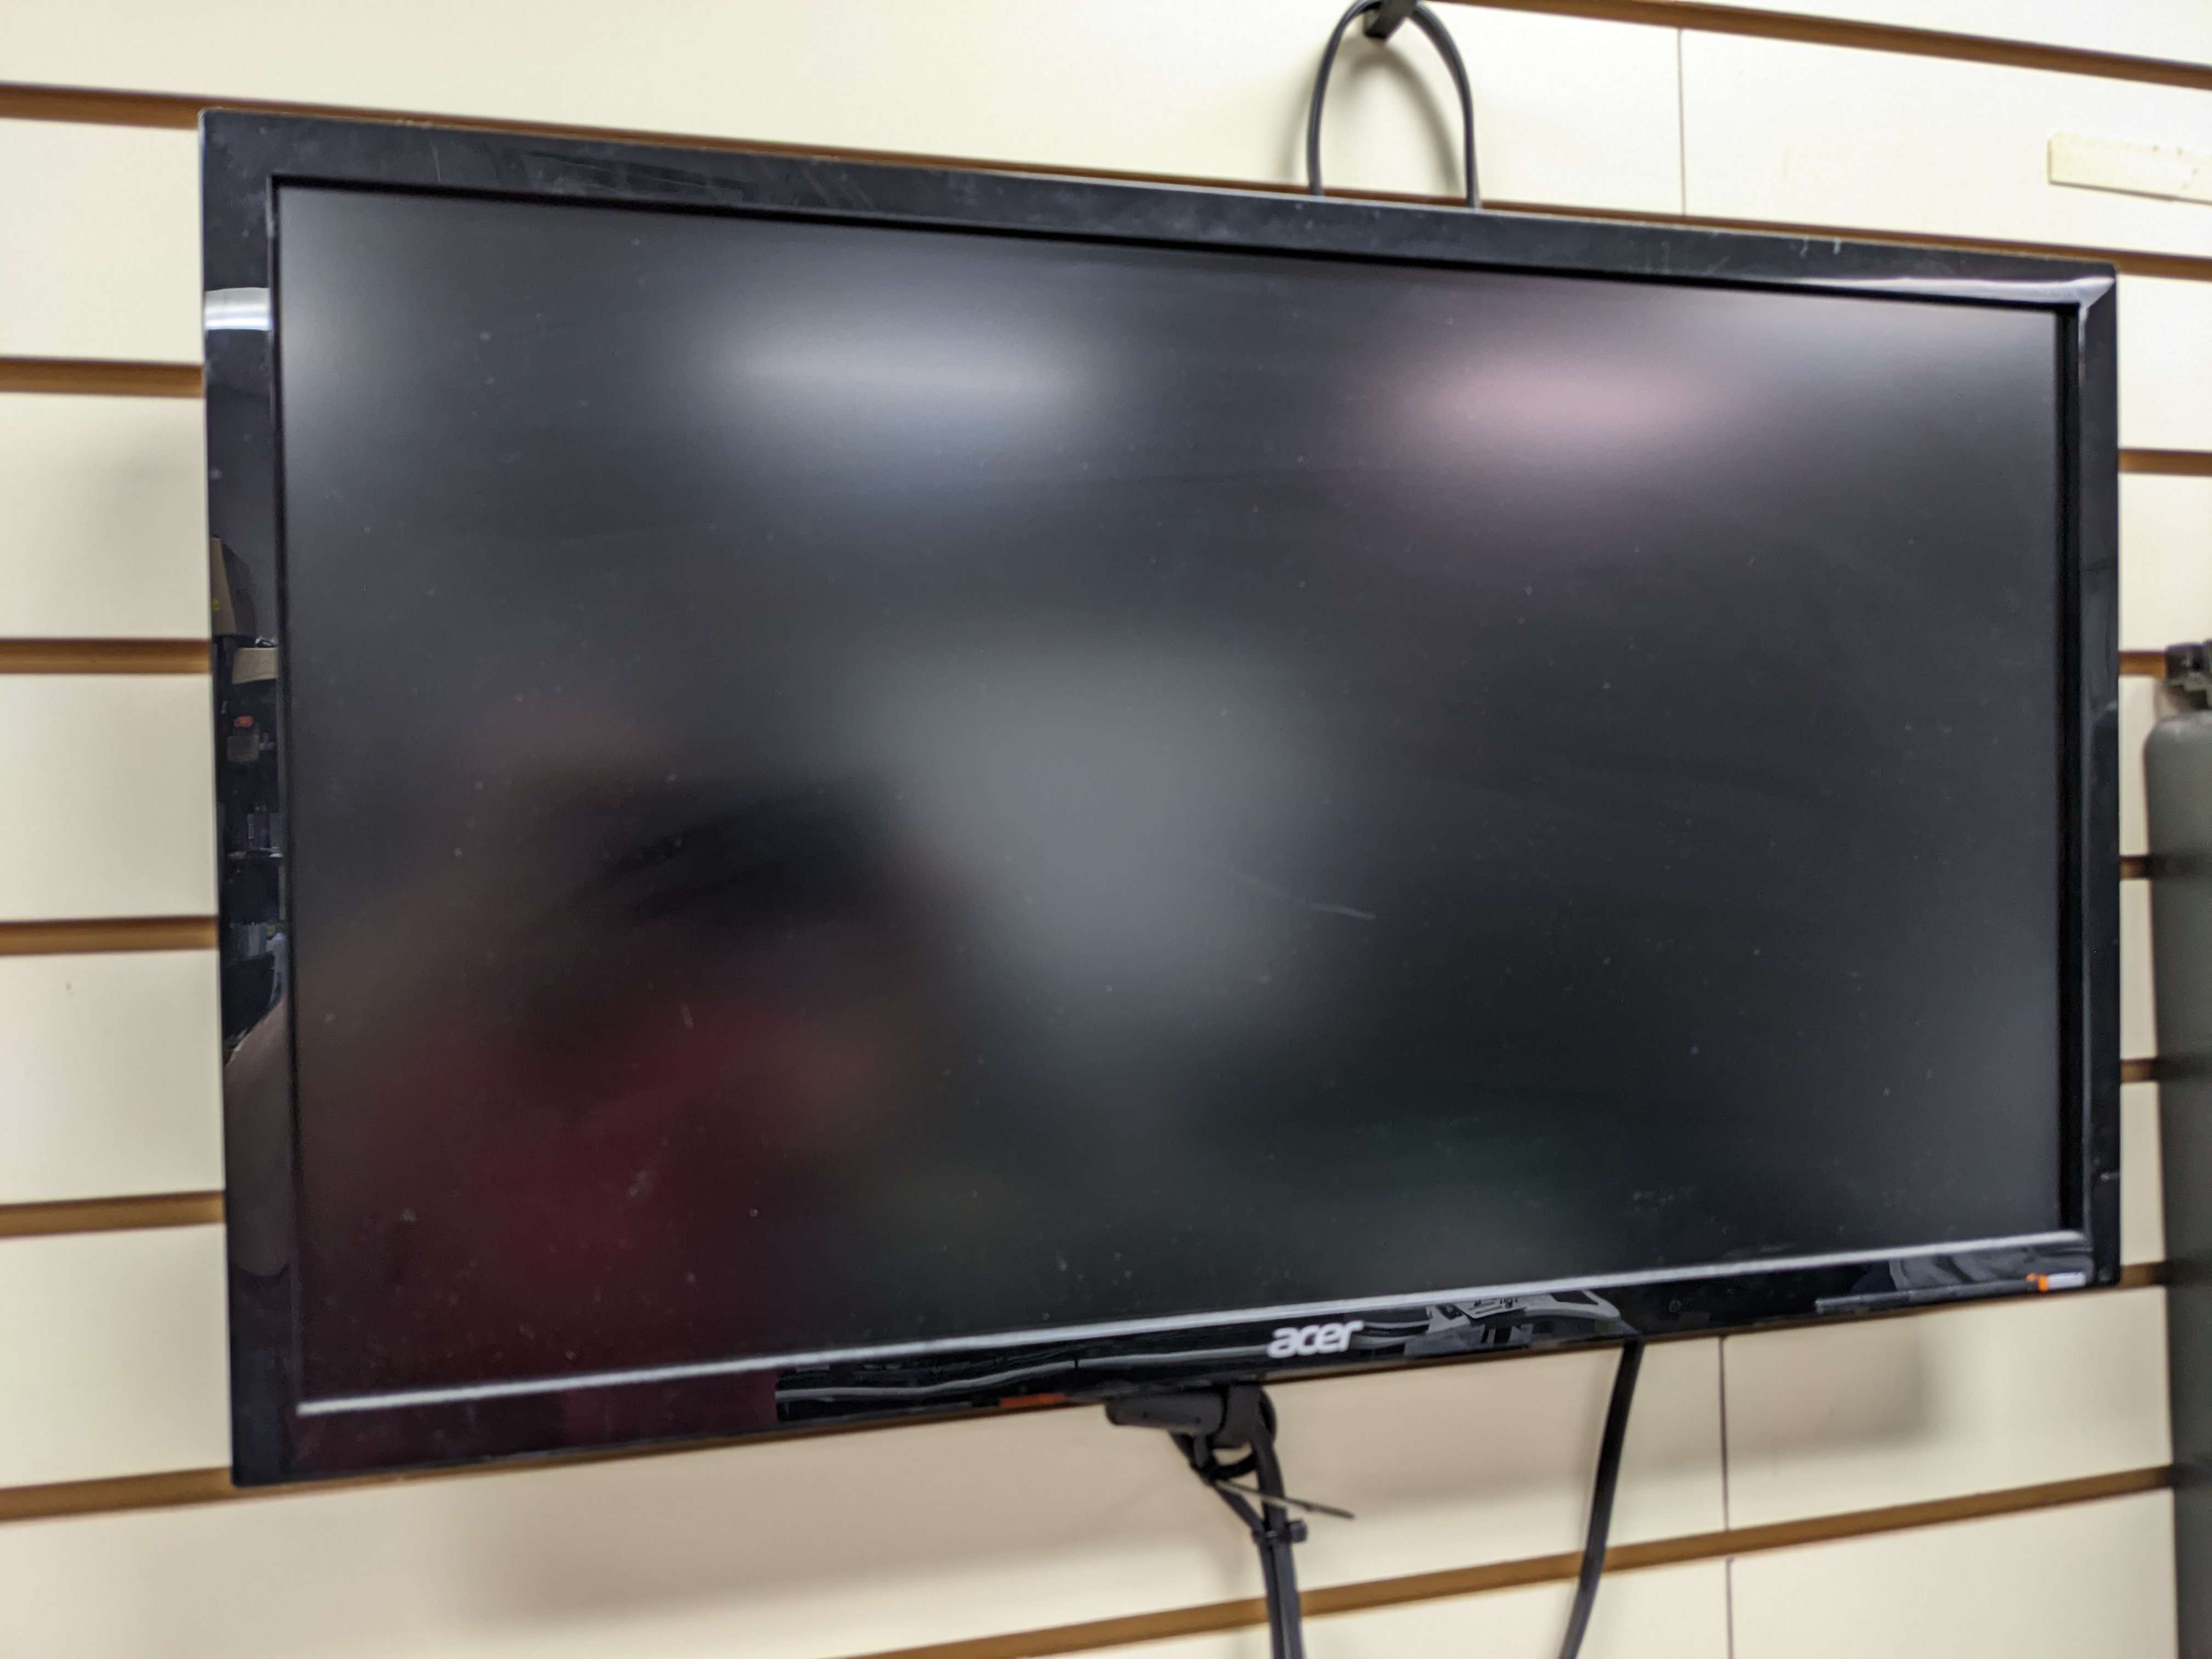 Slat wall monitor mount